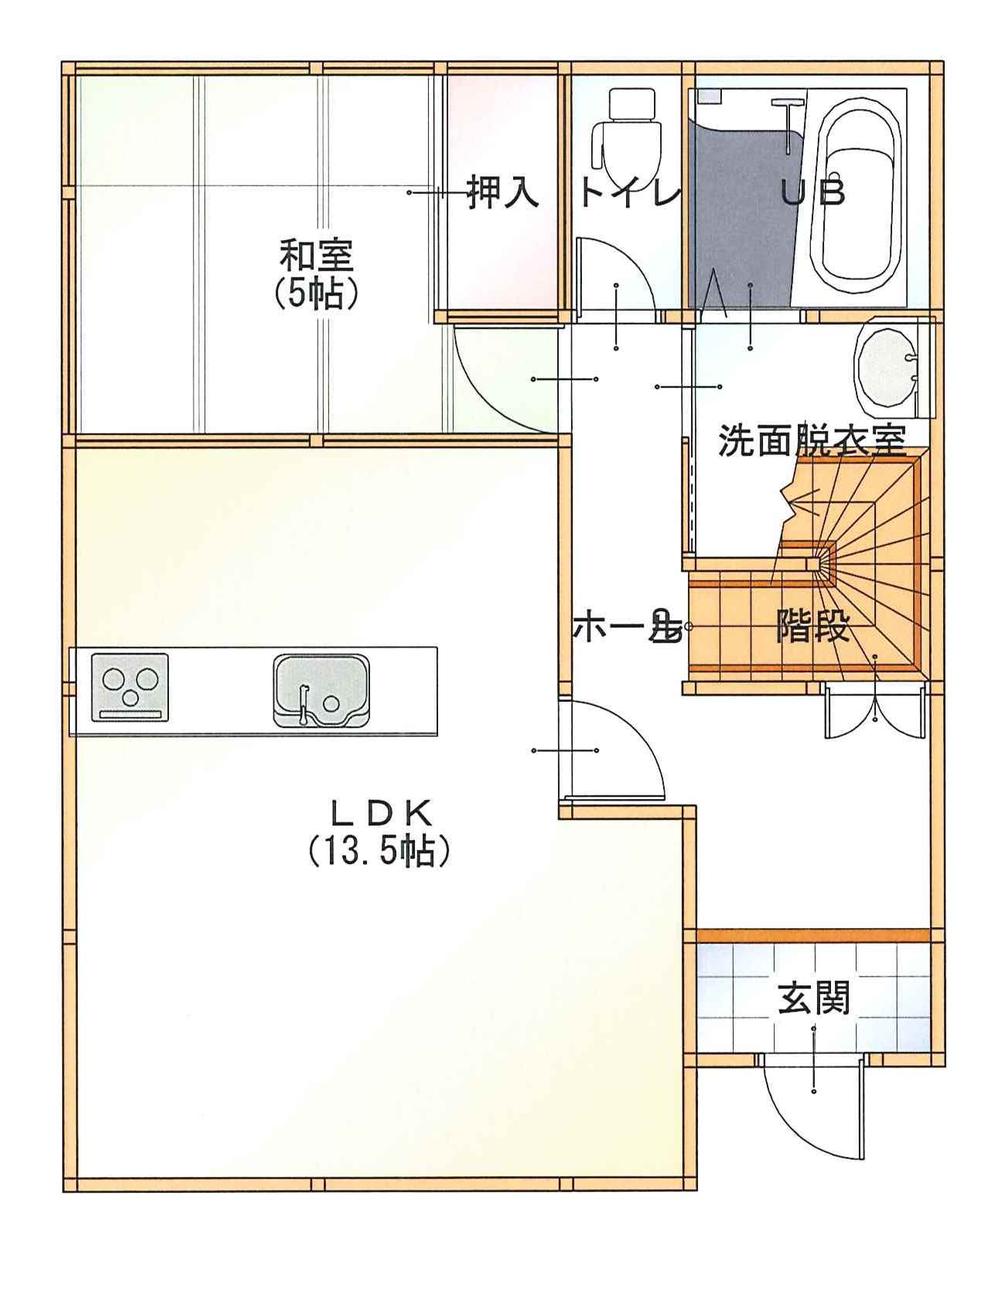 Floor plan. 20.8 million yen, 4LDK, Land area 115.21 sq m , Building area 96.88 sq m 1FL